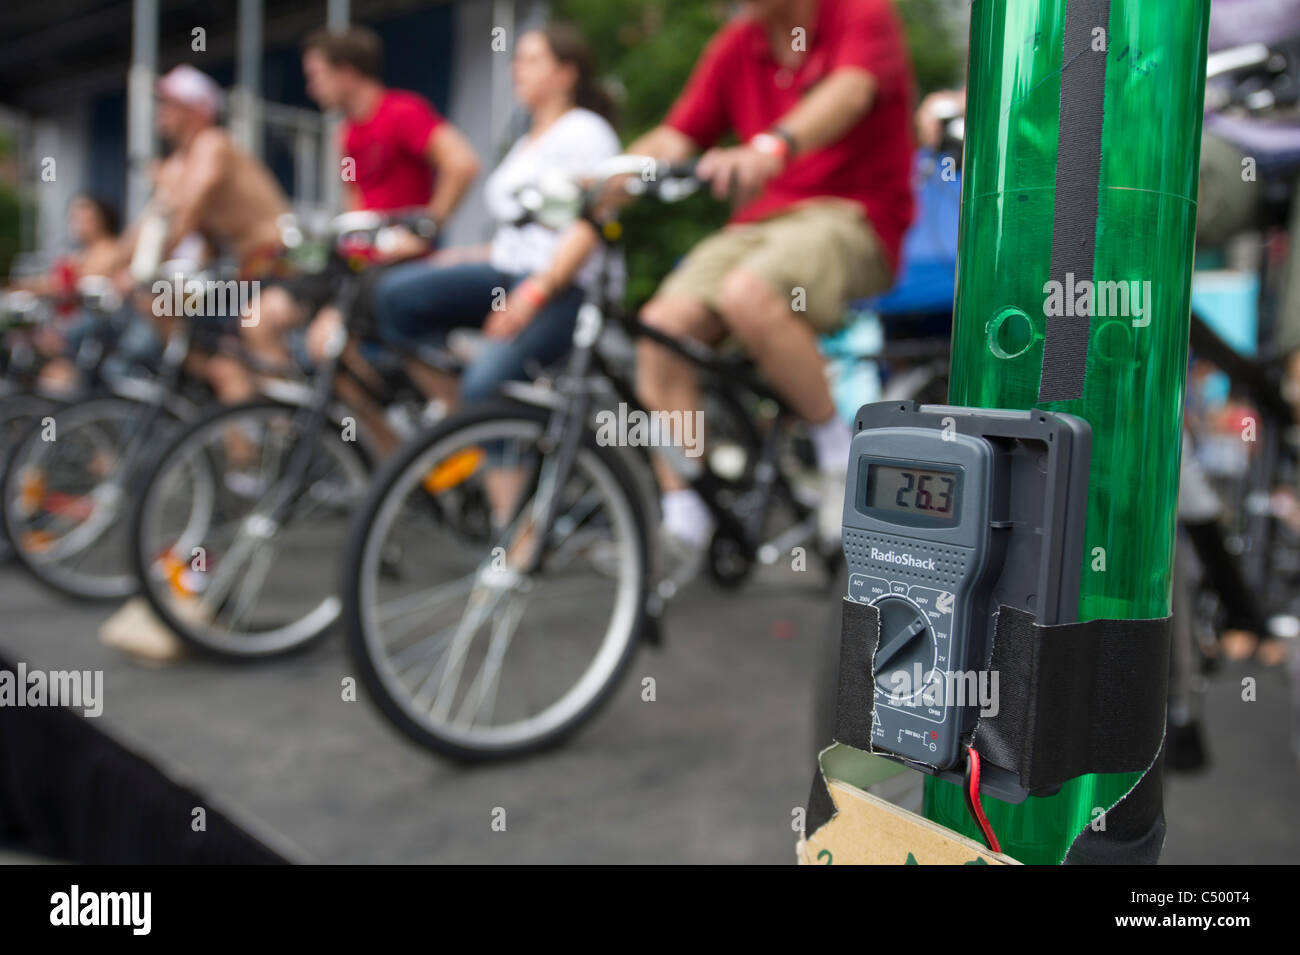 Générateur de vélo Banque de photographies et d'images à haute résolution -  Alamy